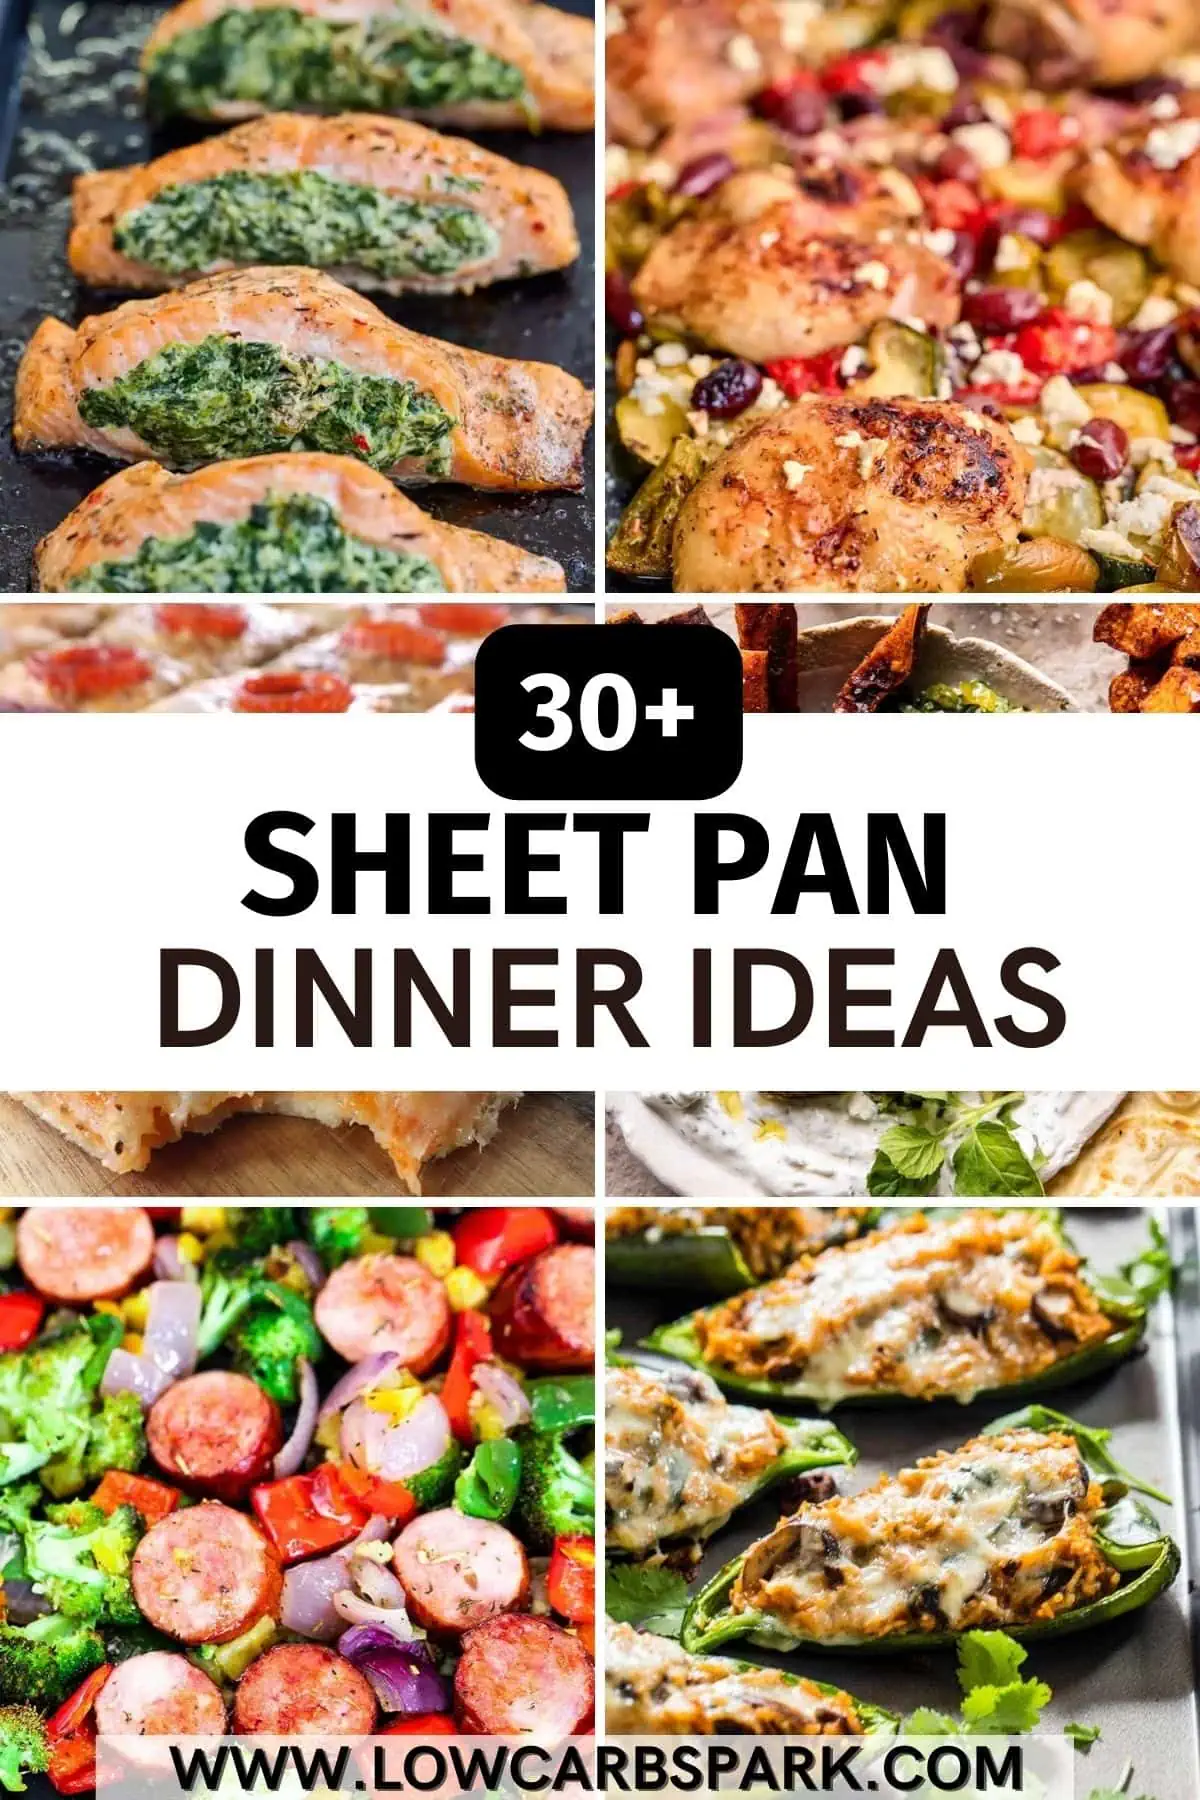 30+ Sheet Pan Dinner Ideas